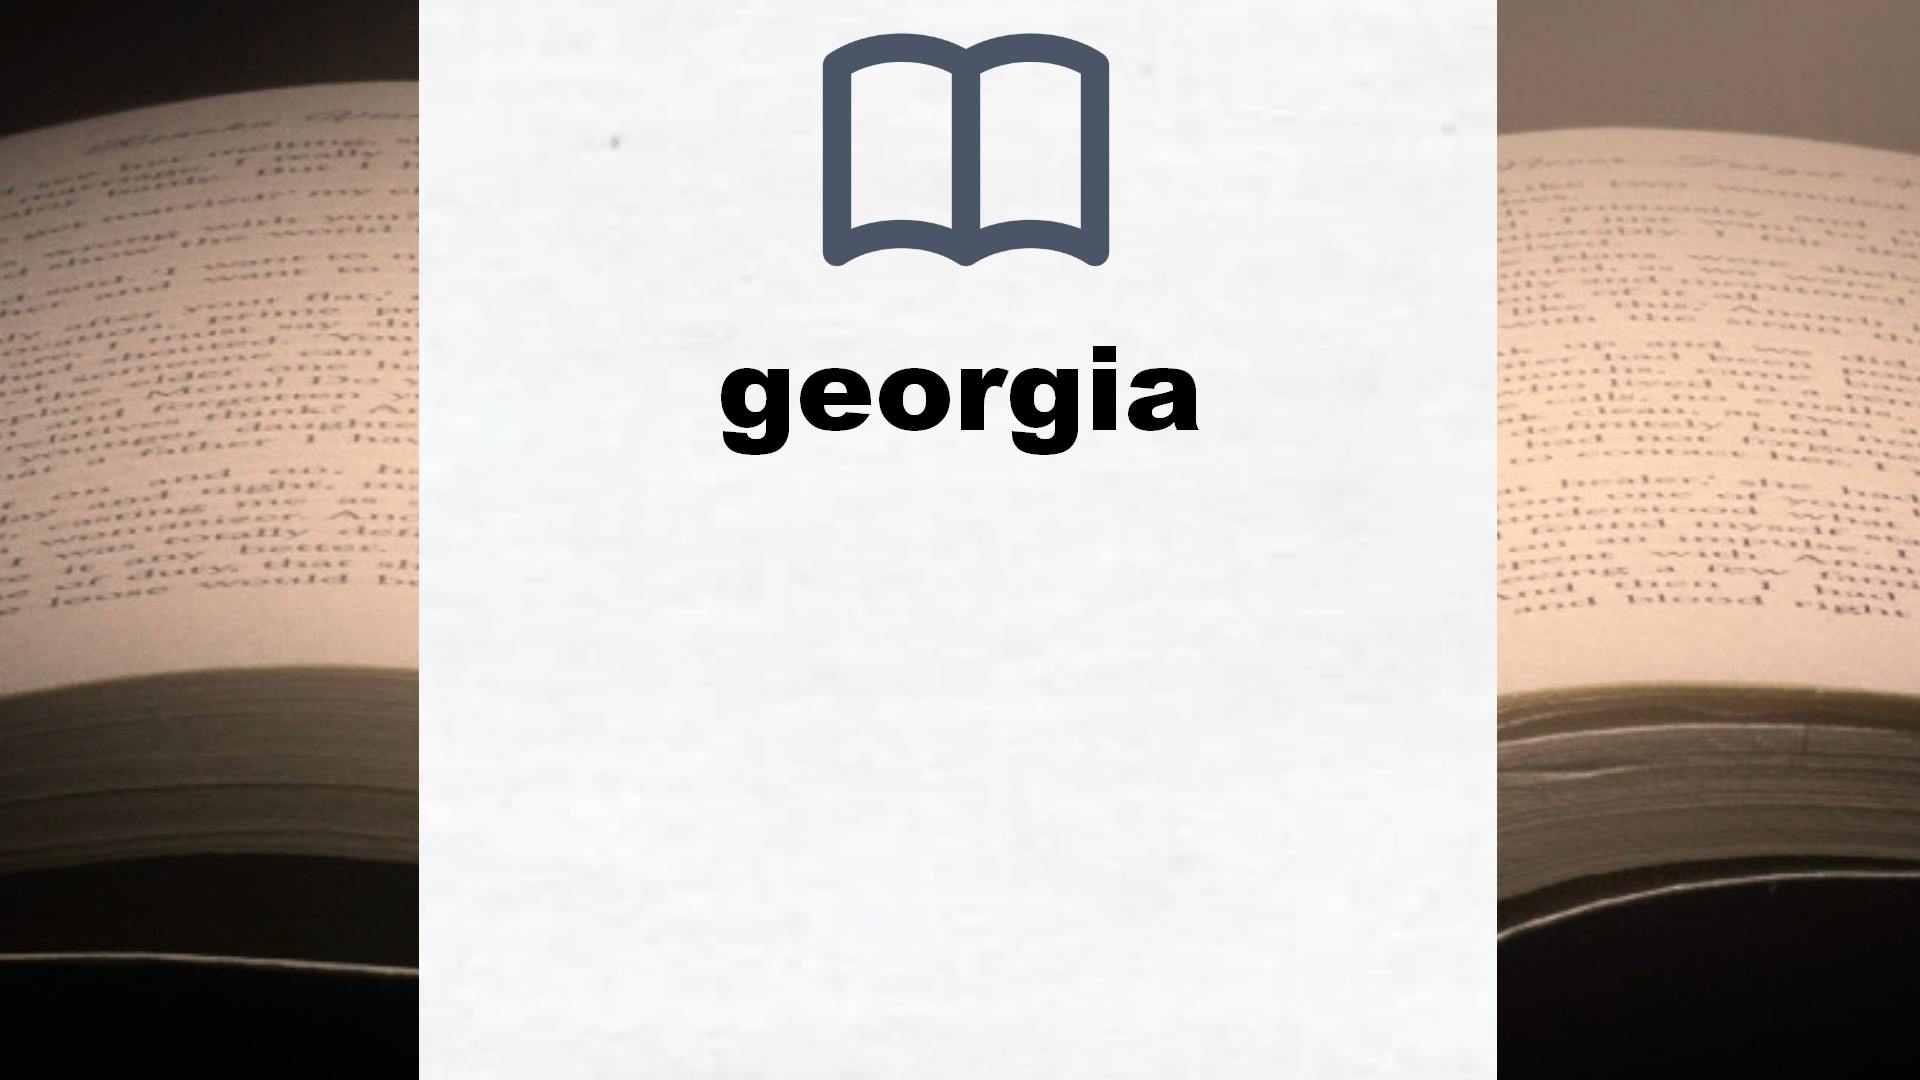 Libros sobre georgia